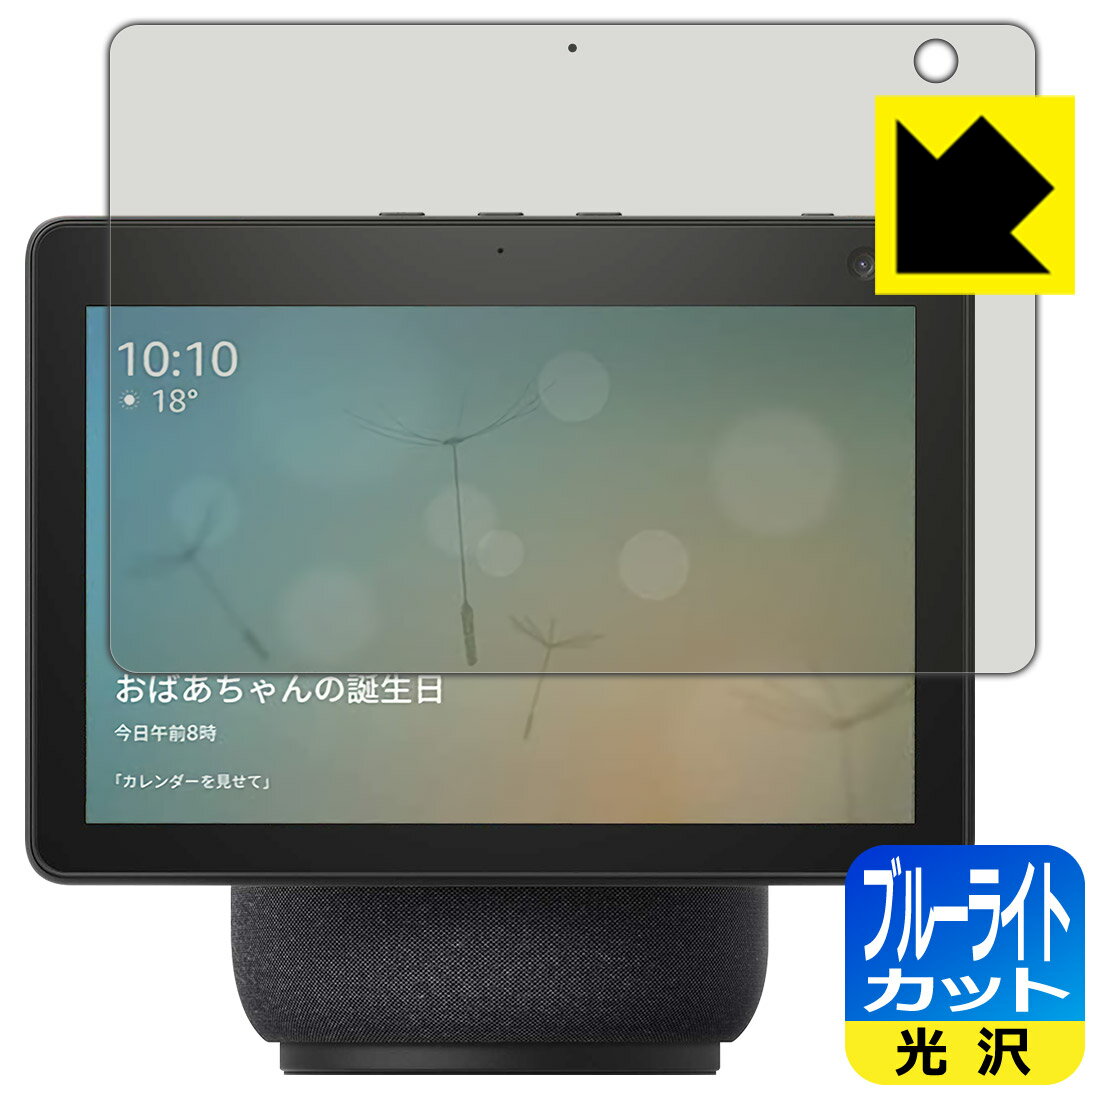 ブルーライトカット【光沢】保護フィルム Amazon Echo Show 10 (第3世代・2021年4月発売モデル) 日本製 自社製造直販